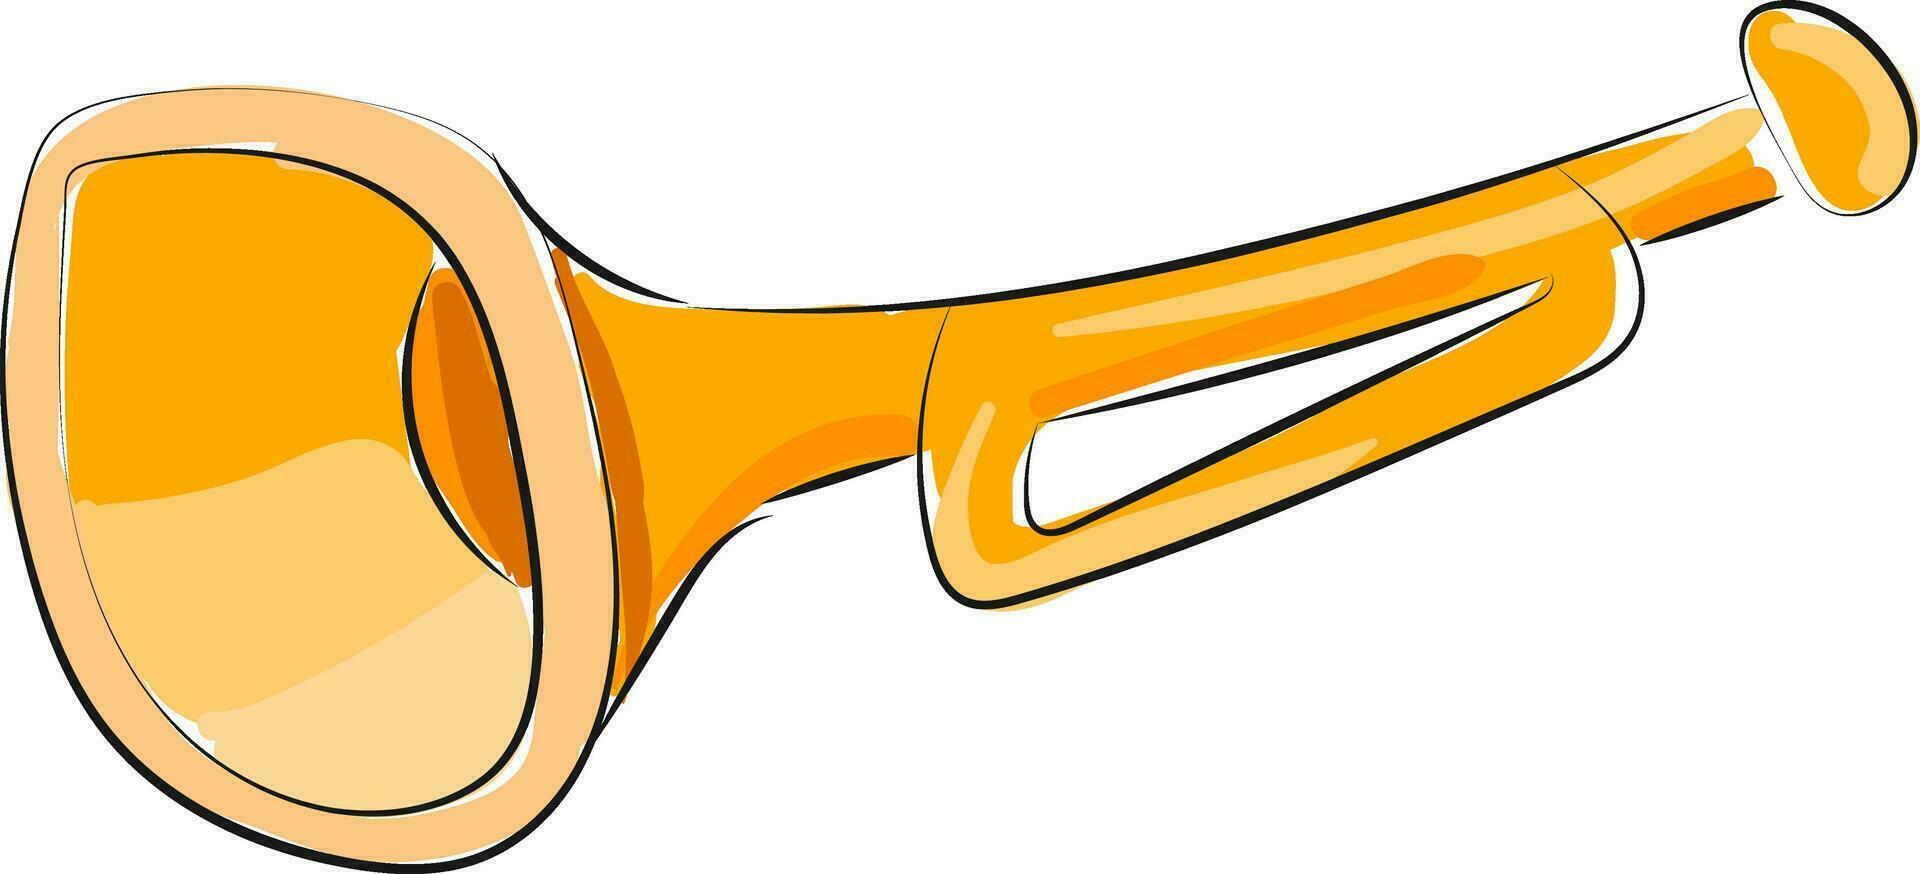 trompet, vector of kleur illustratie.